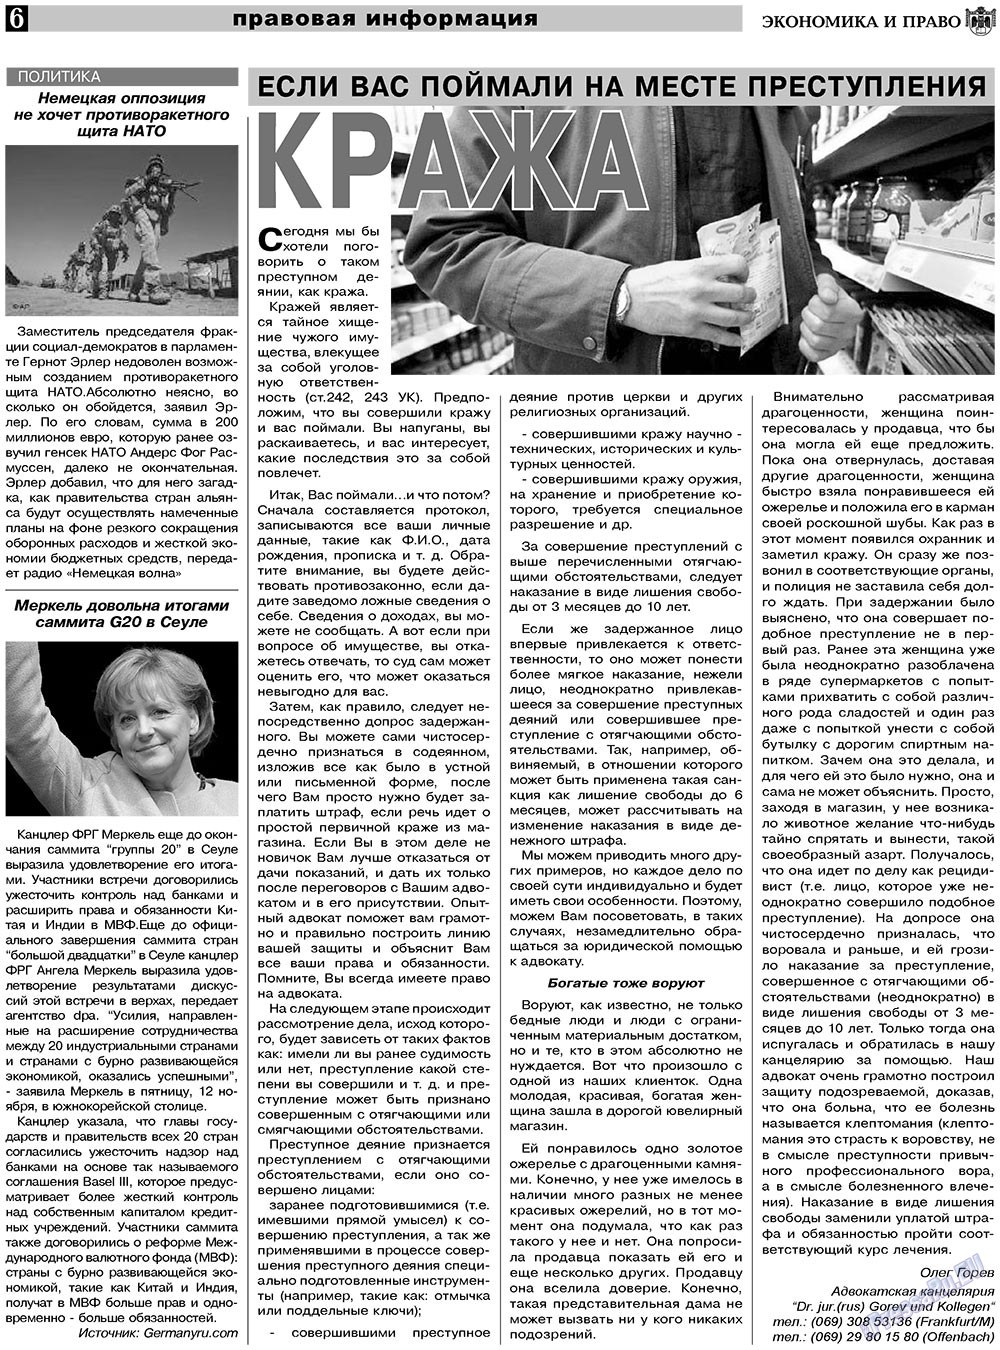 Экономика и право, газета. 2010 №12 стр.6